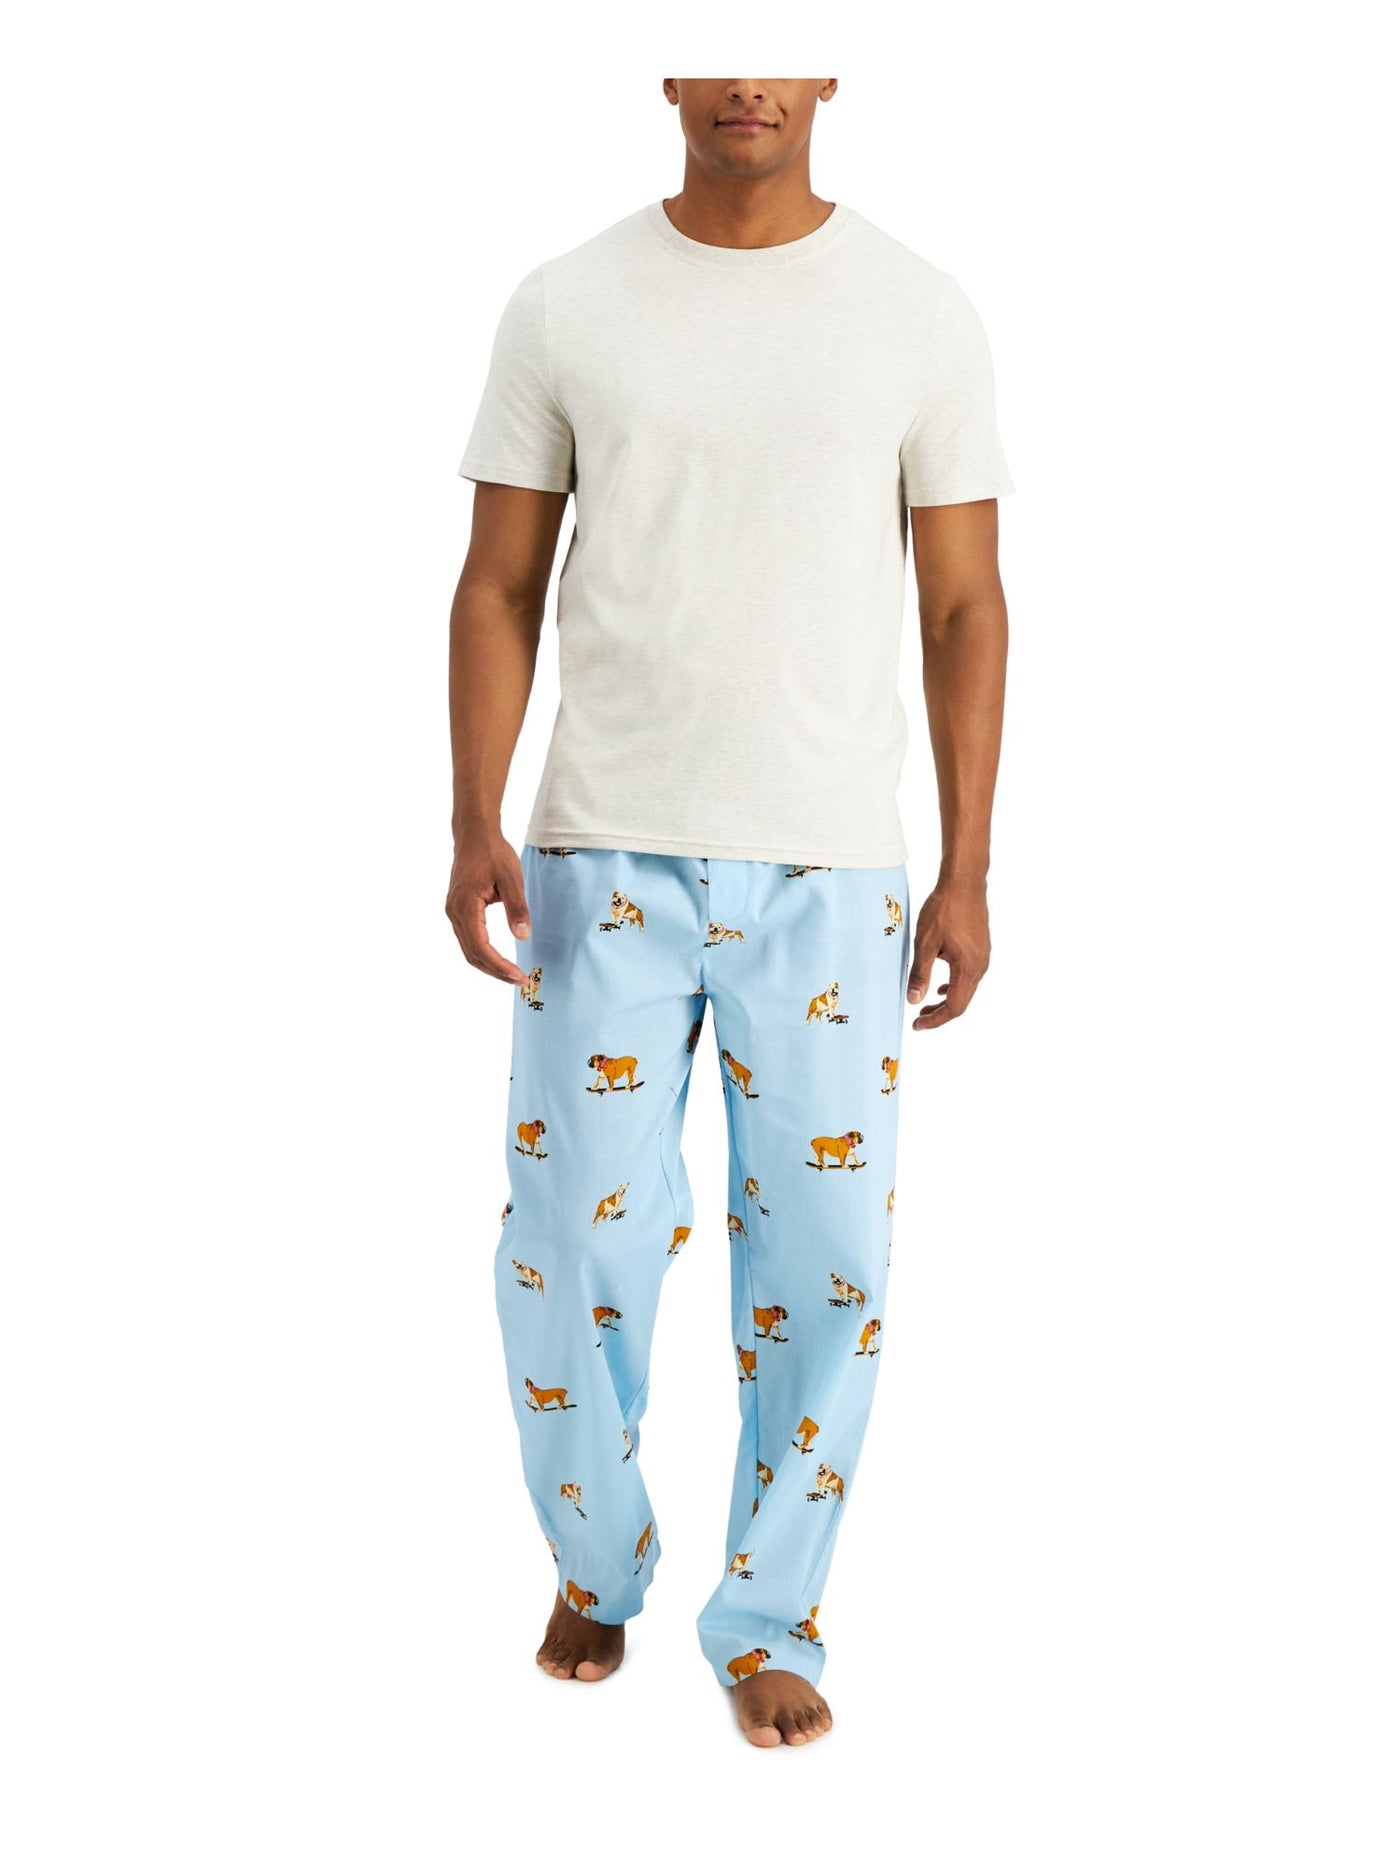 CLUBROOM Mens Skating Bulldog Navy Drawstring Short Sleeve T-Shirt Top Straight leg Pants Pajamas L